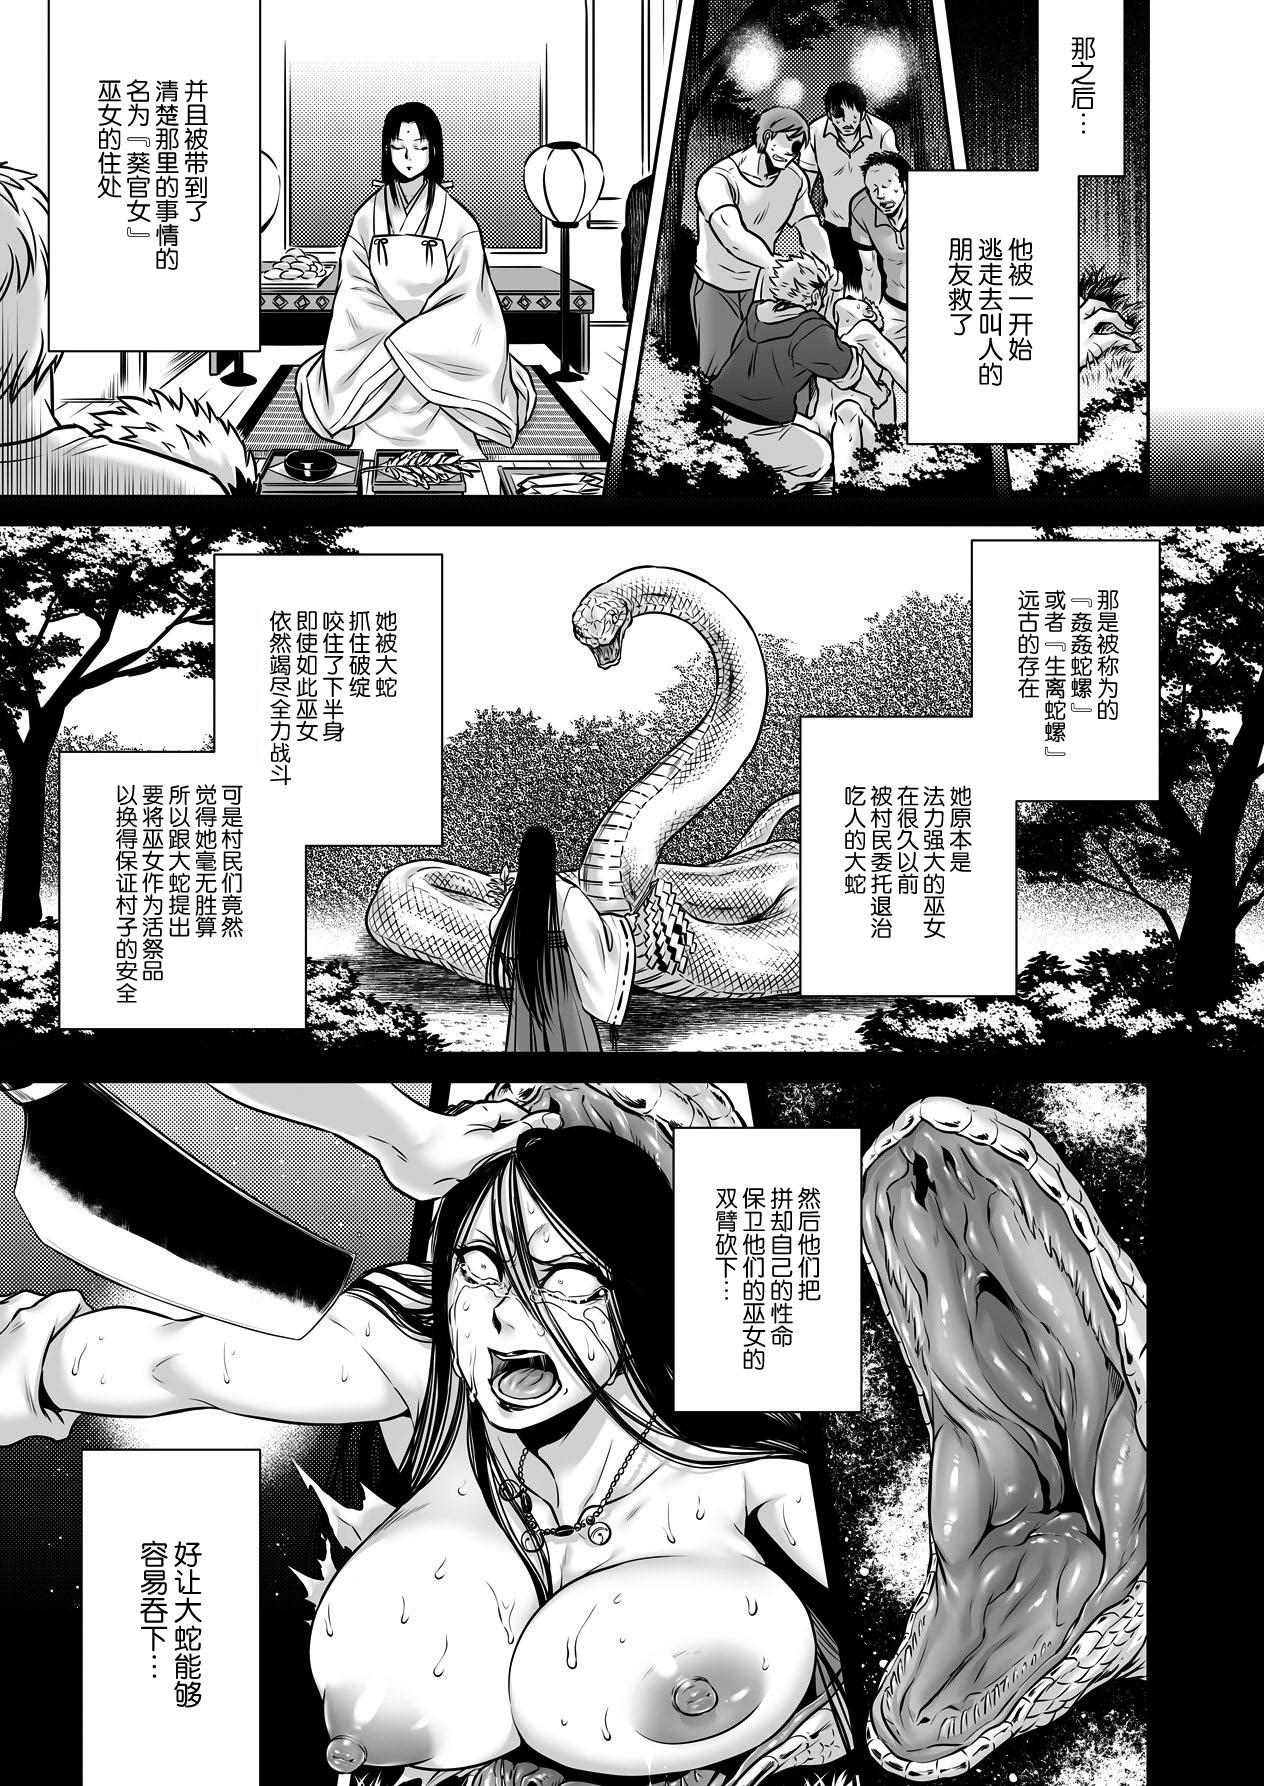 Igyou Kaikitan "Kankandara" | Wonderfully Grotesque Mystery - Kankandara 25